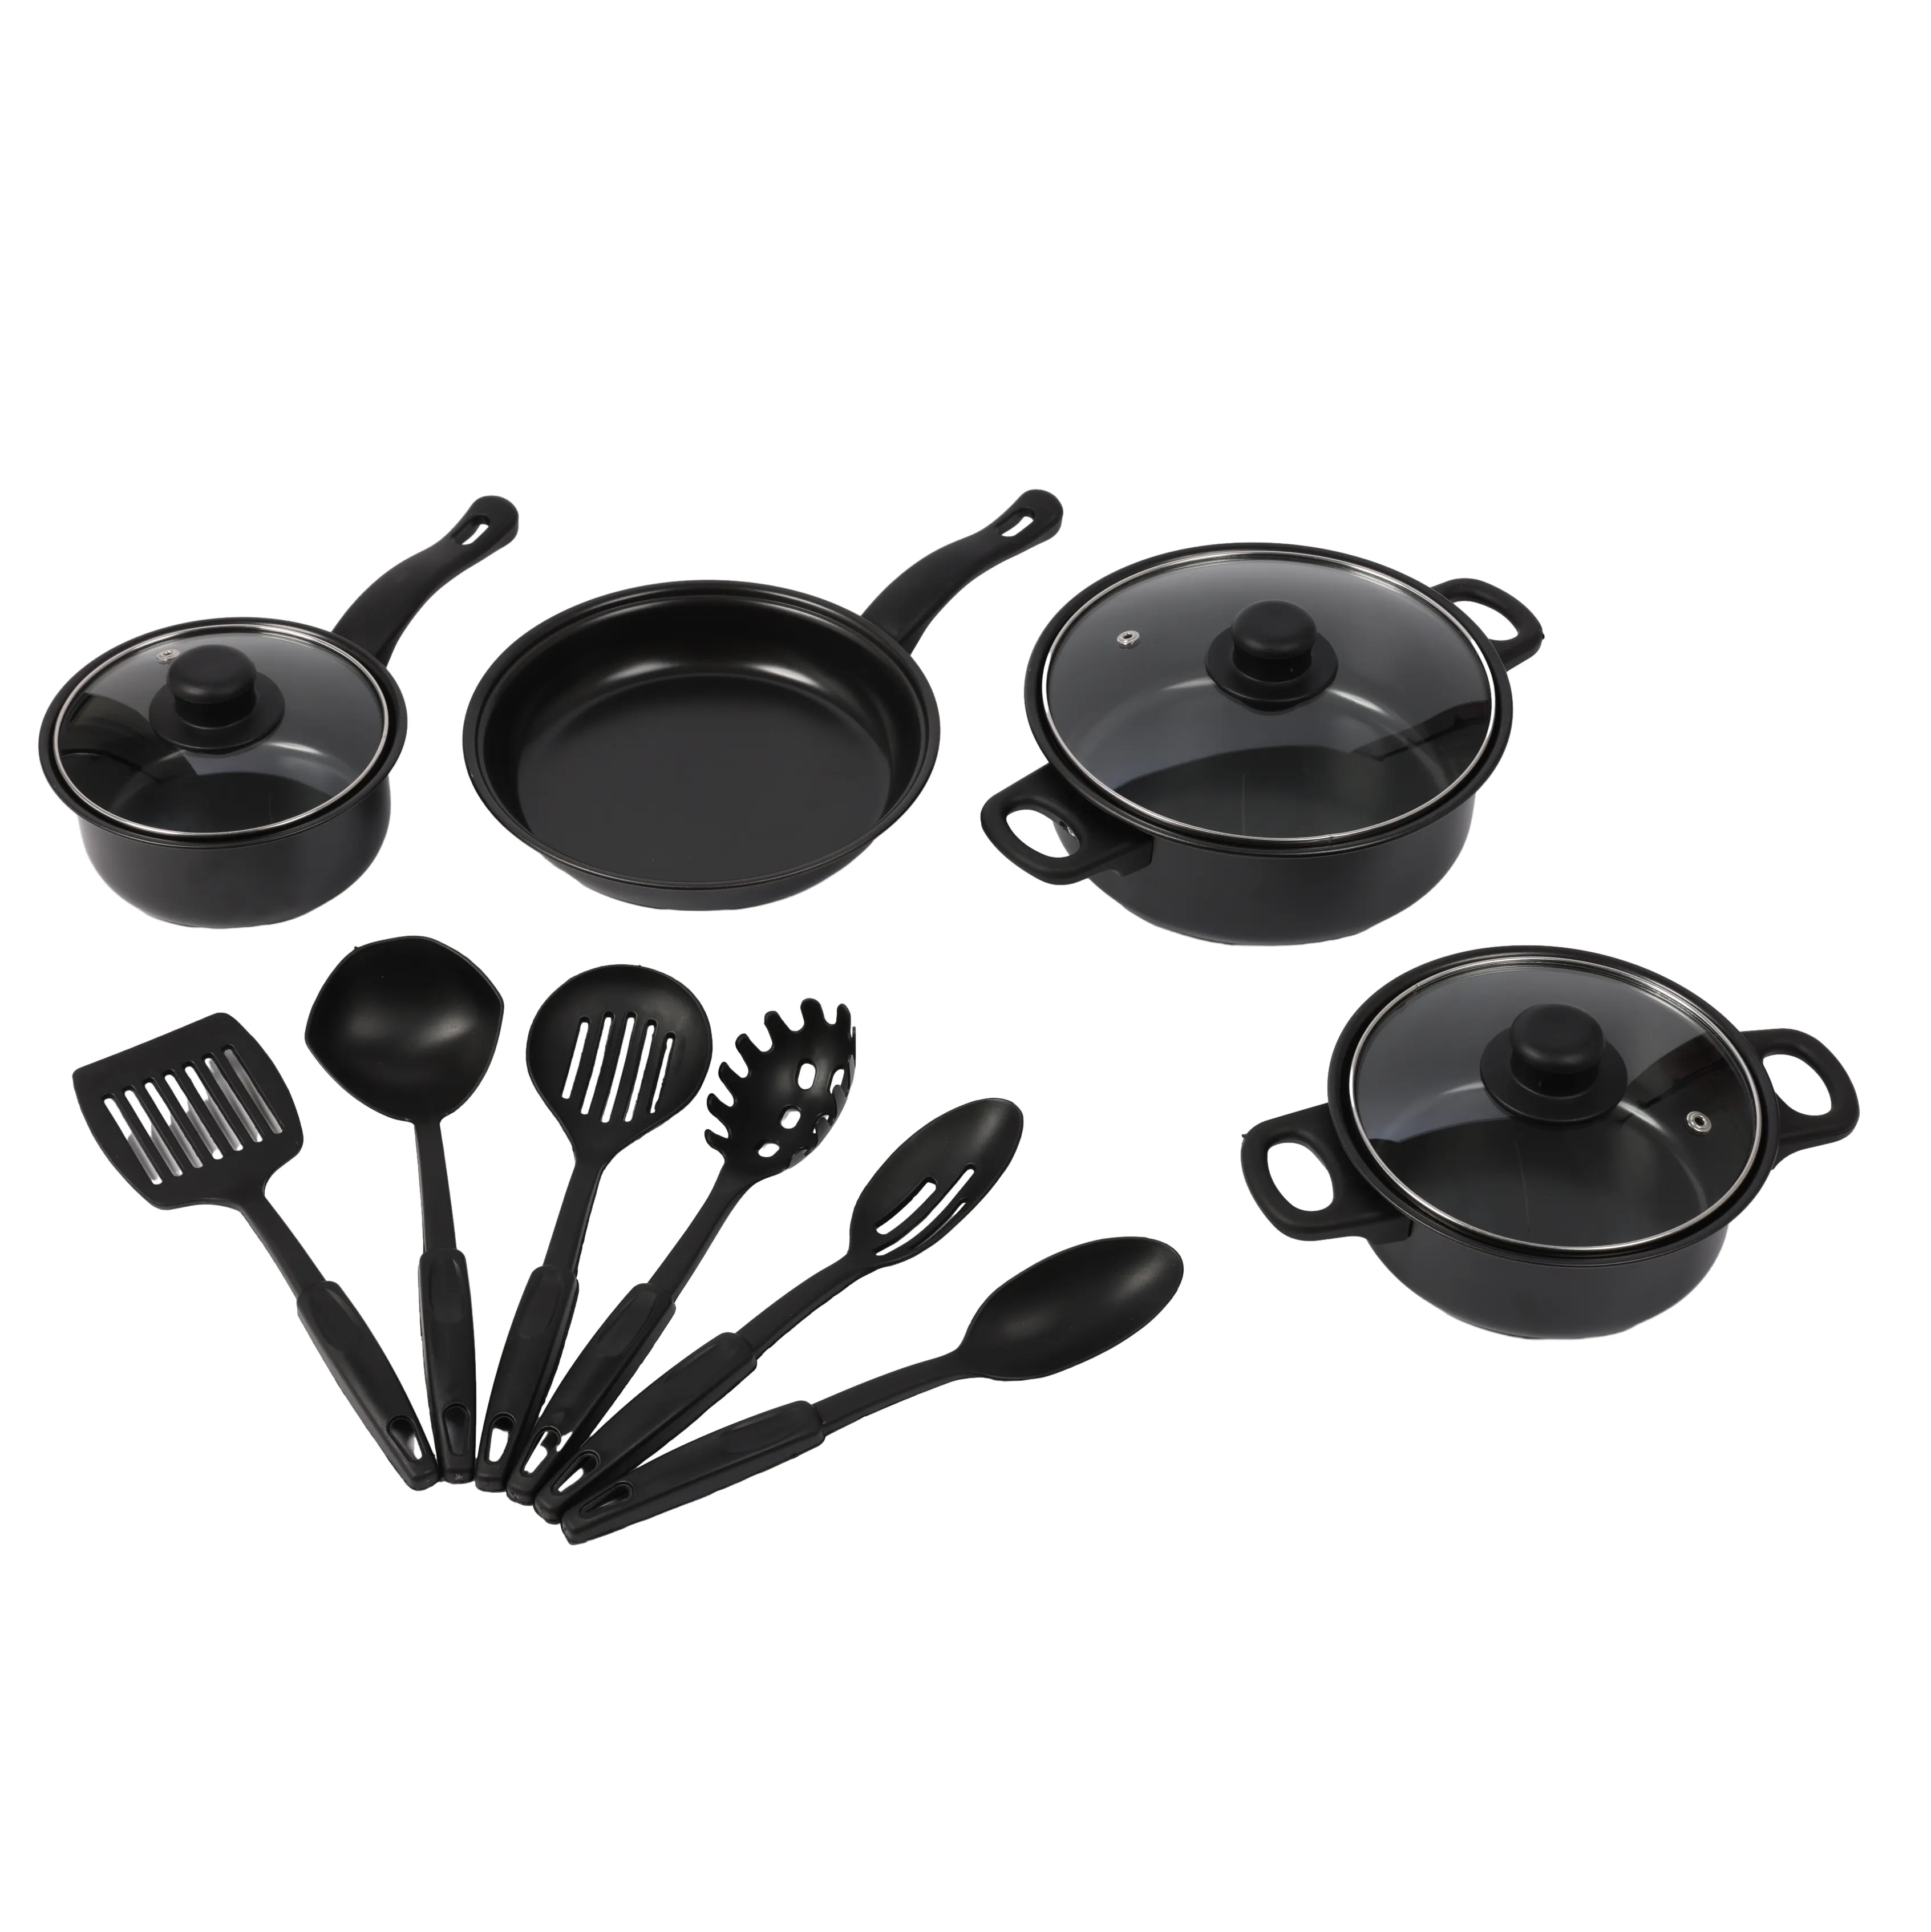 Wholesale 13pcs Non-stick pan soup pot crock frying pan Multi-piece kitchen cookware sets